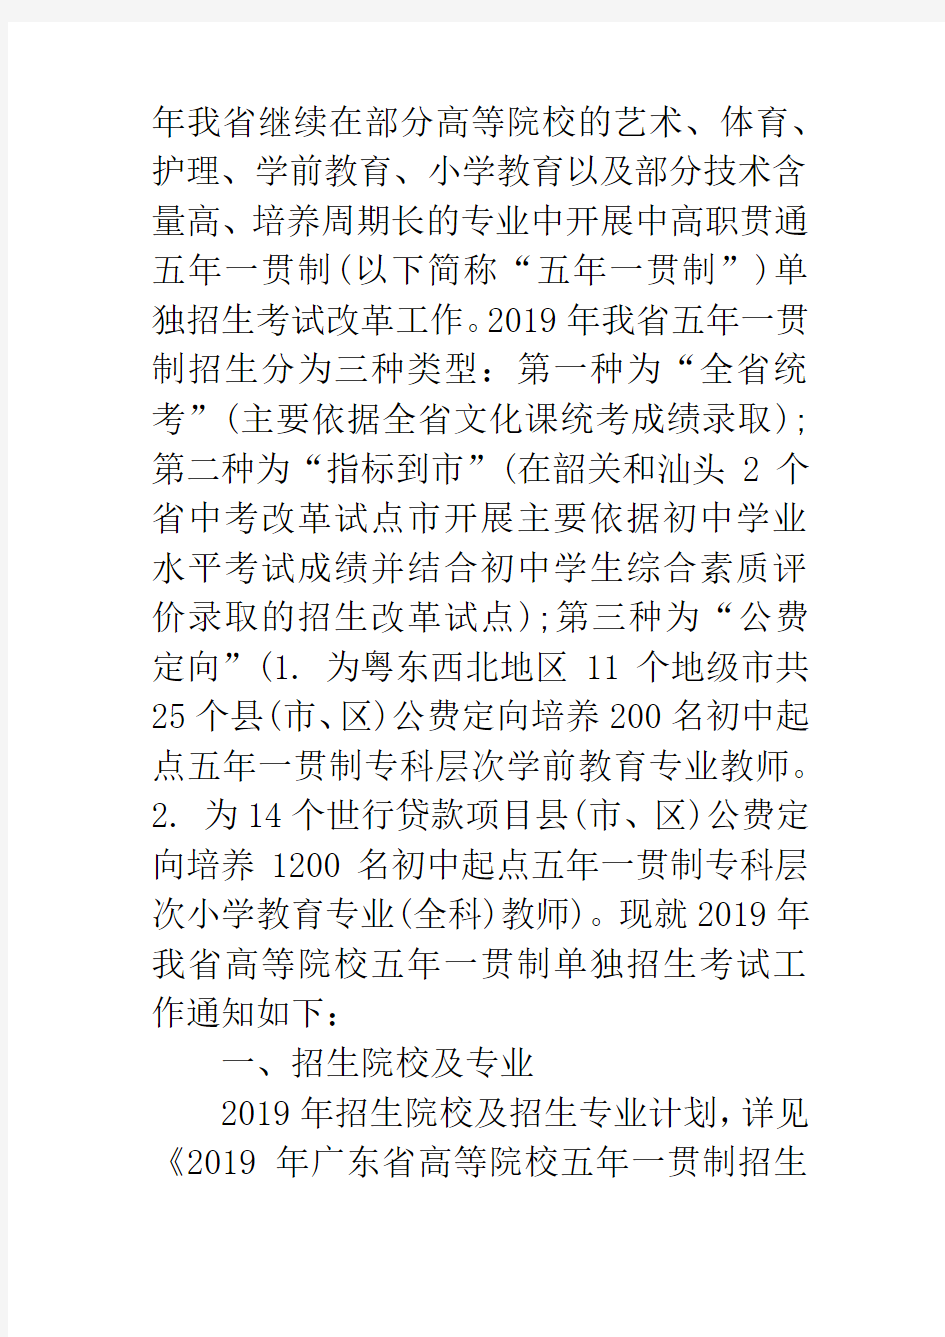 广东2019年高职院校五年一贯制单独招生考试工作的通知